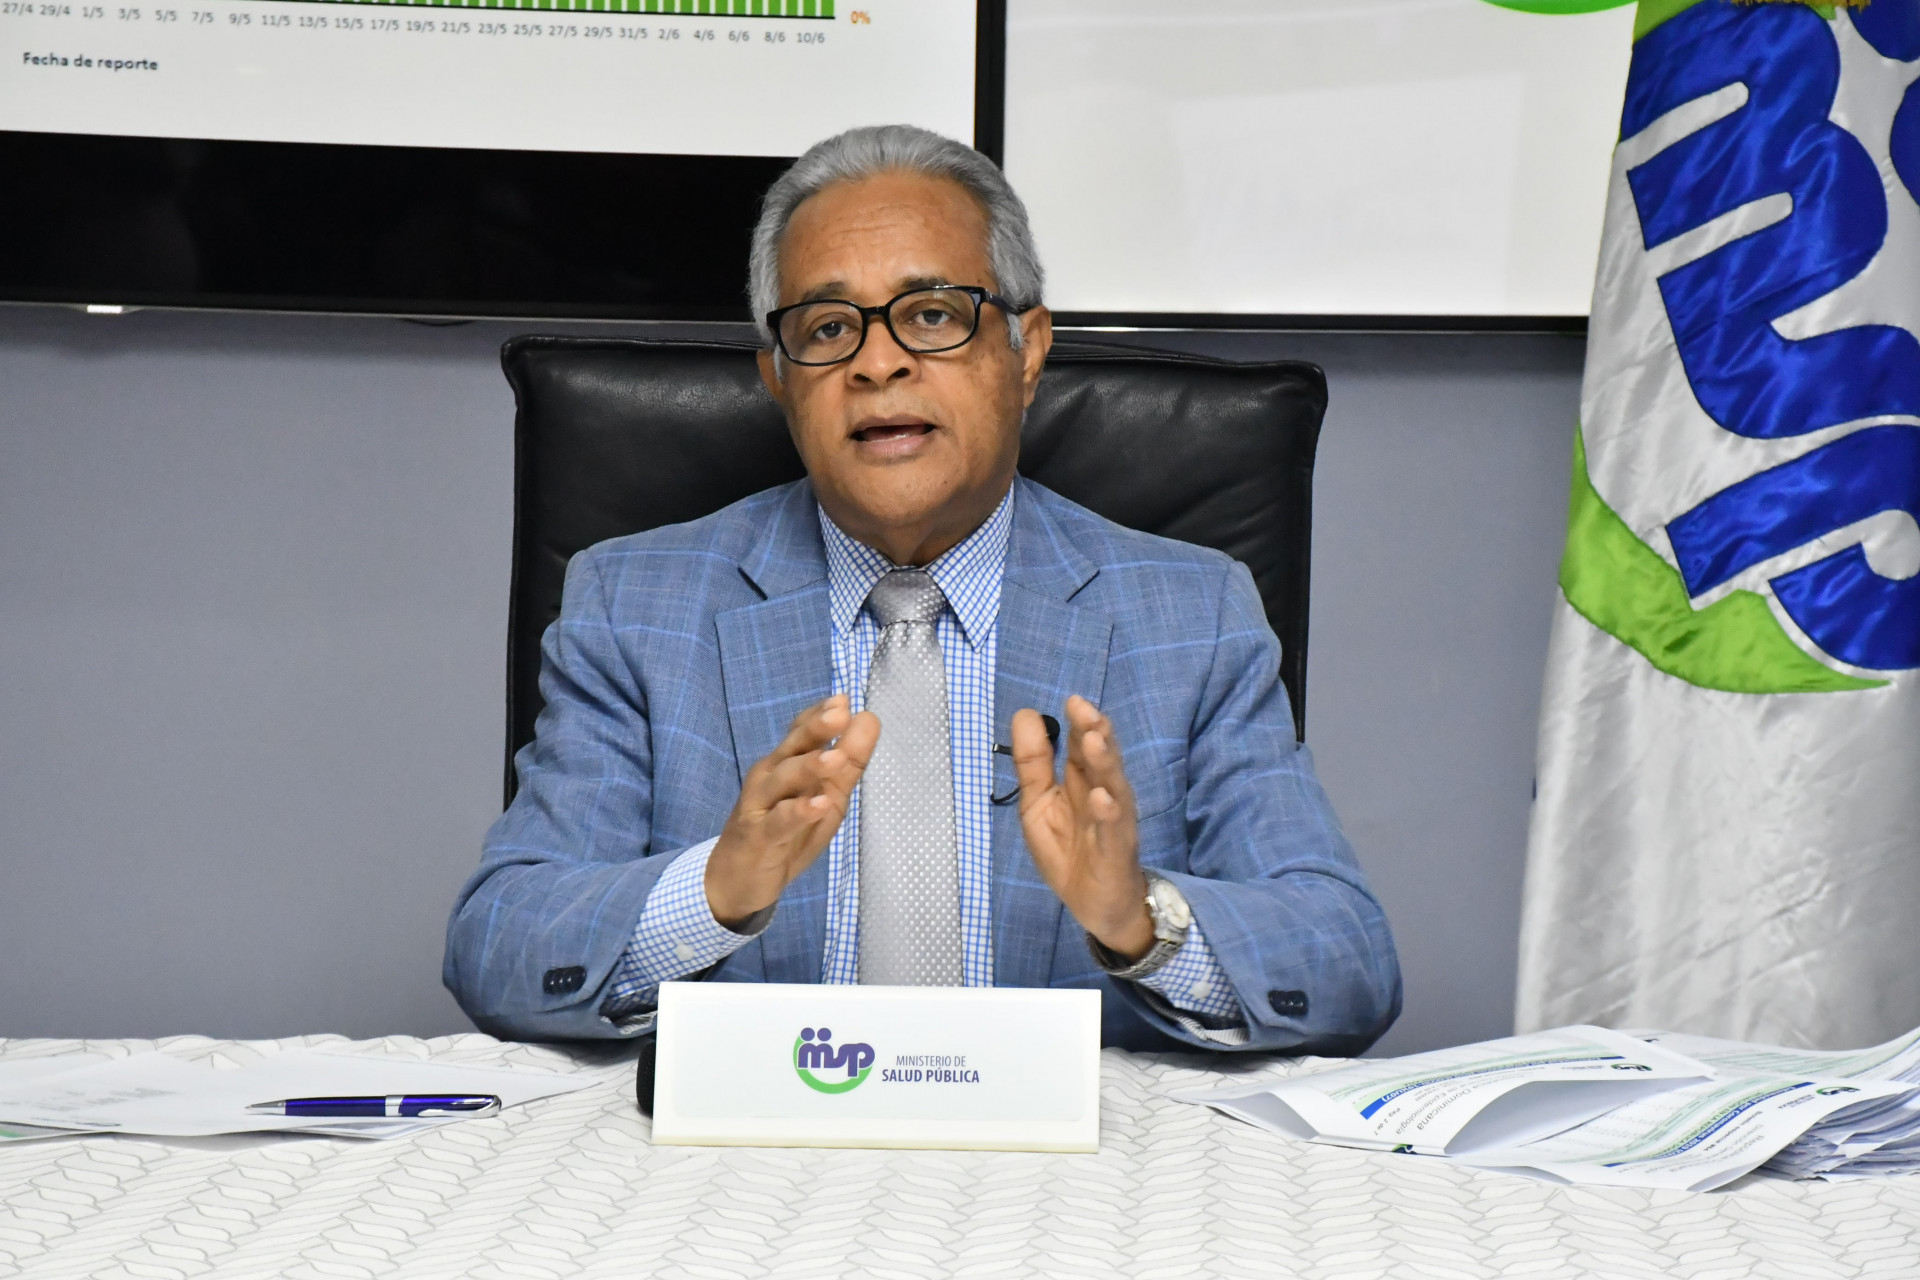 REPÚBLICA DOMINICANA: ? Ministro de Salud pide aprobar estado de emergencia; recuperados COVID-19 ascienden a 12,754 y tasa letalidad baja a 2.58 %